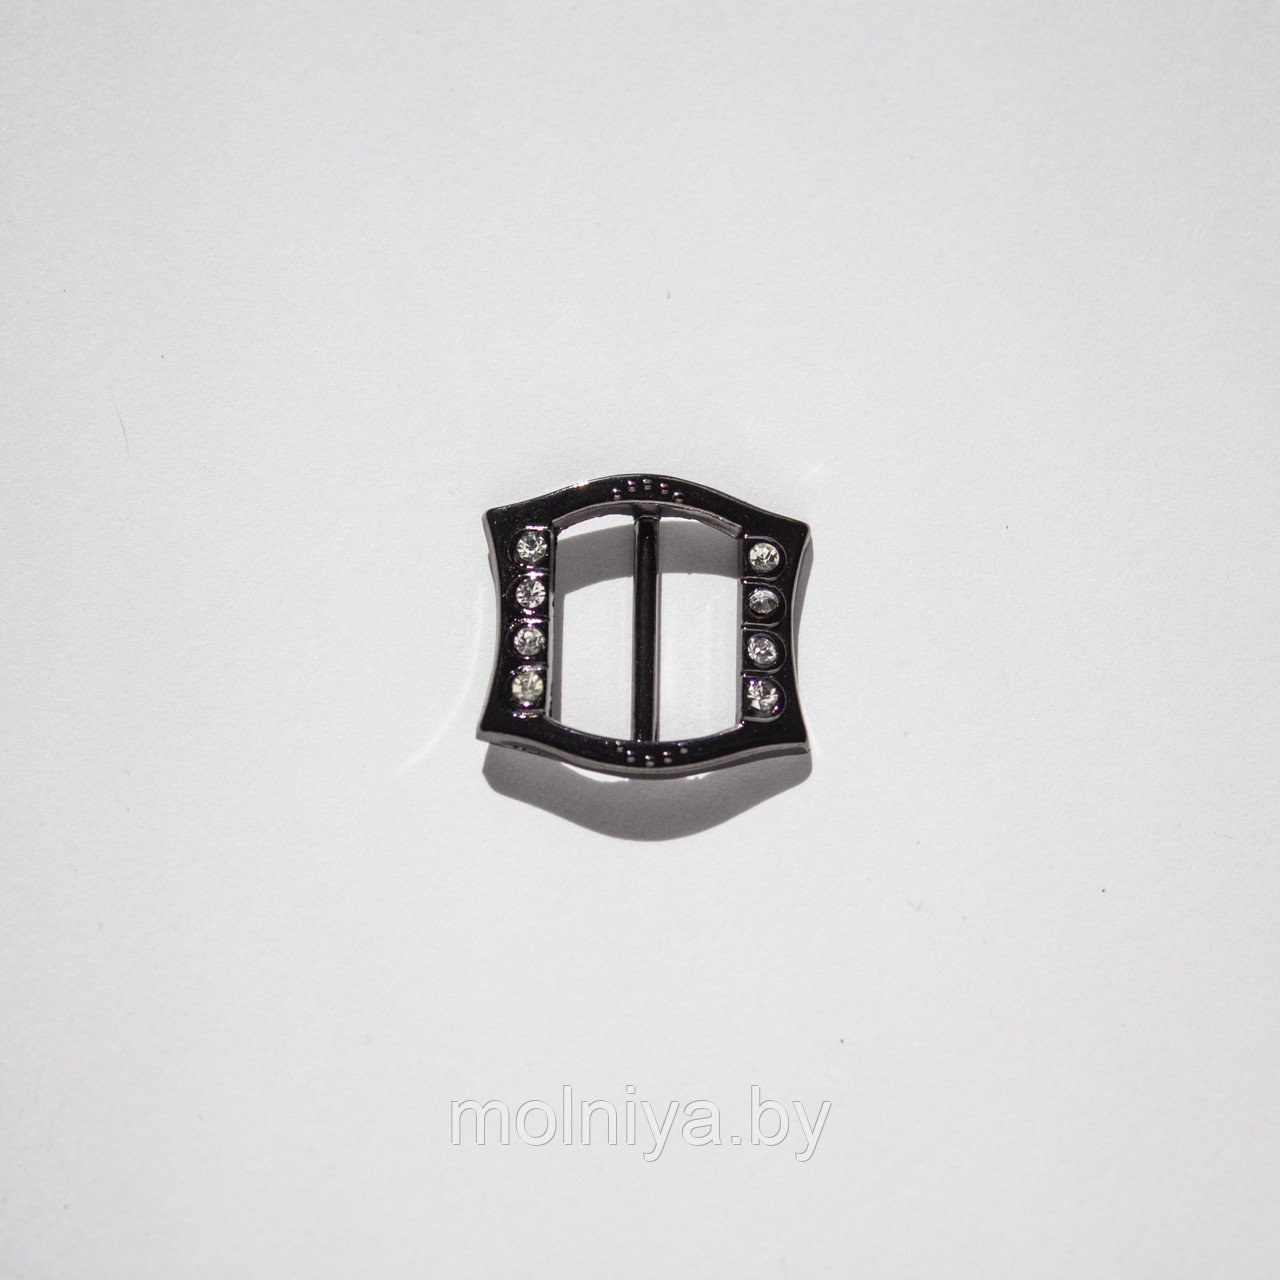 Пряжка металлическая декоративная 20 мм (черный никель)